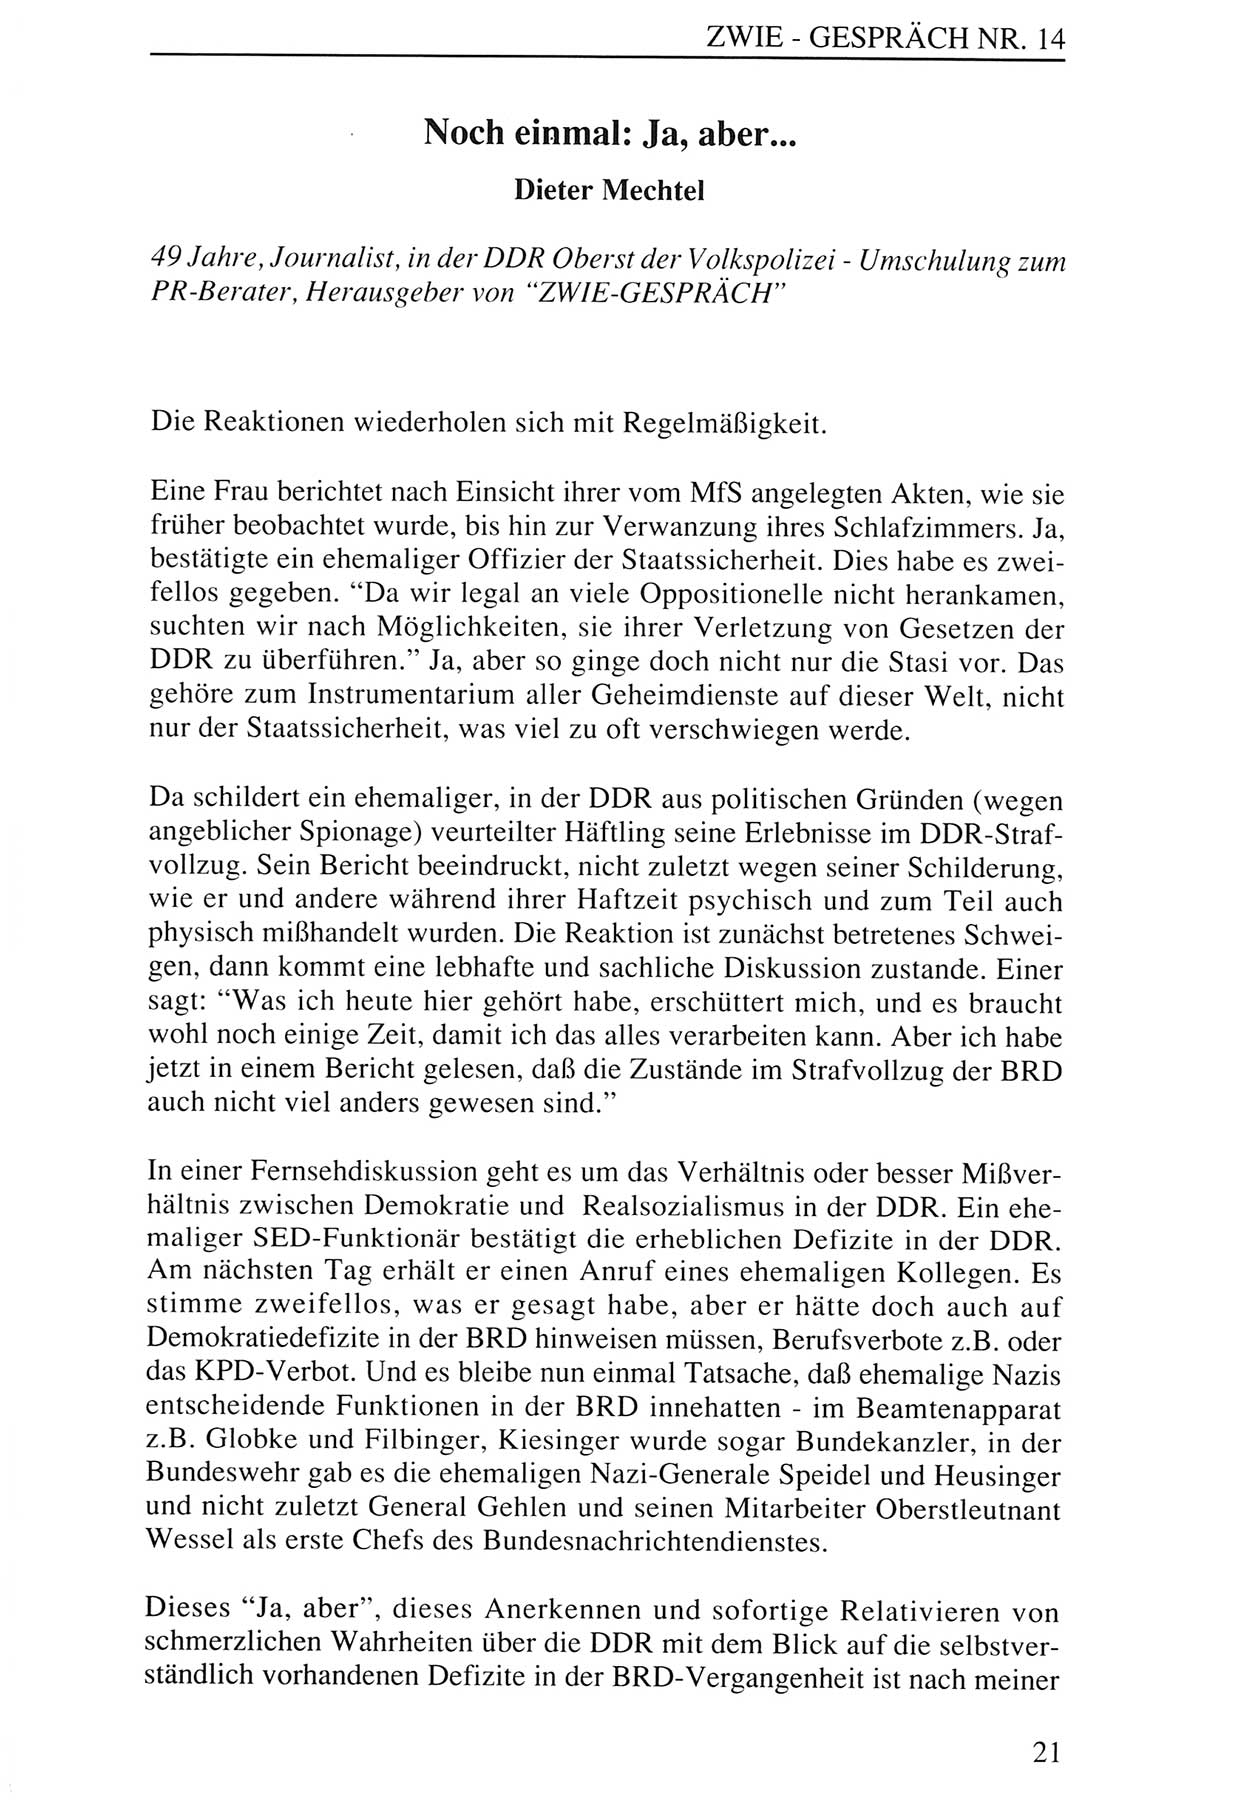 Zwie-Gespräch, Beiträge zur Aufarbeitung der Staatssicherheits-Vergangenheit [Deutsche Demokratische Republik (DDR)], Ausgabe Nr. 14, Berlin 1993, Seite 21 (Zwie-Gespr. Ausg. 14 1993, S. 21)